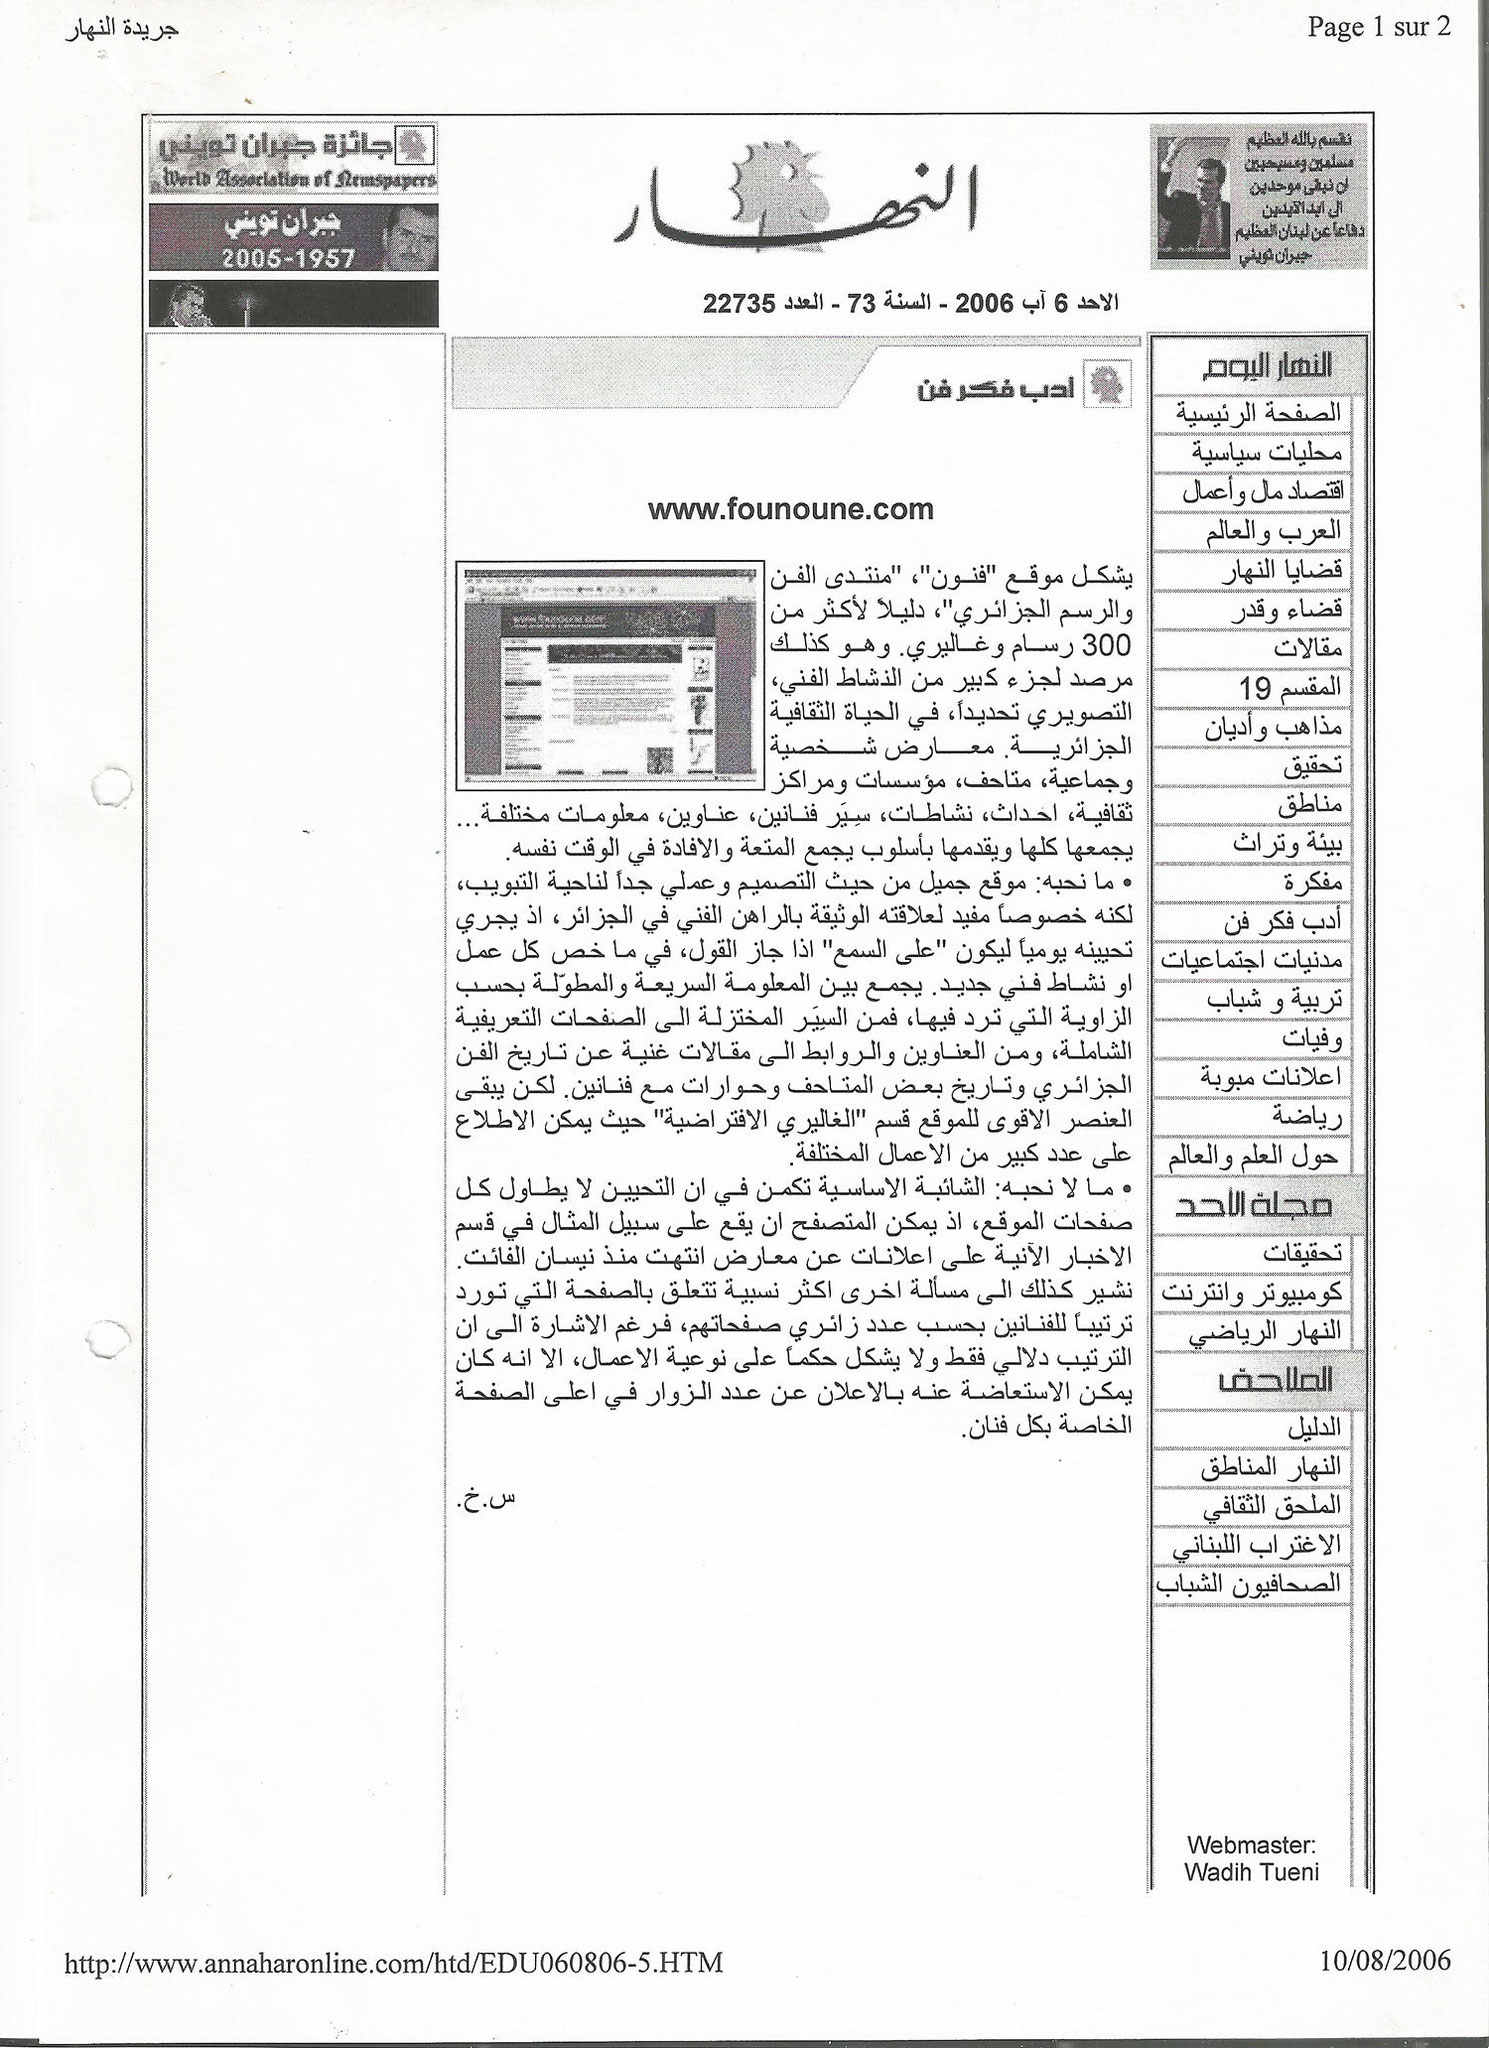 Site founoune.com, Ennaharonline.com (liban), 2006.